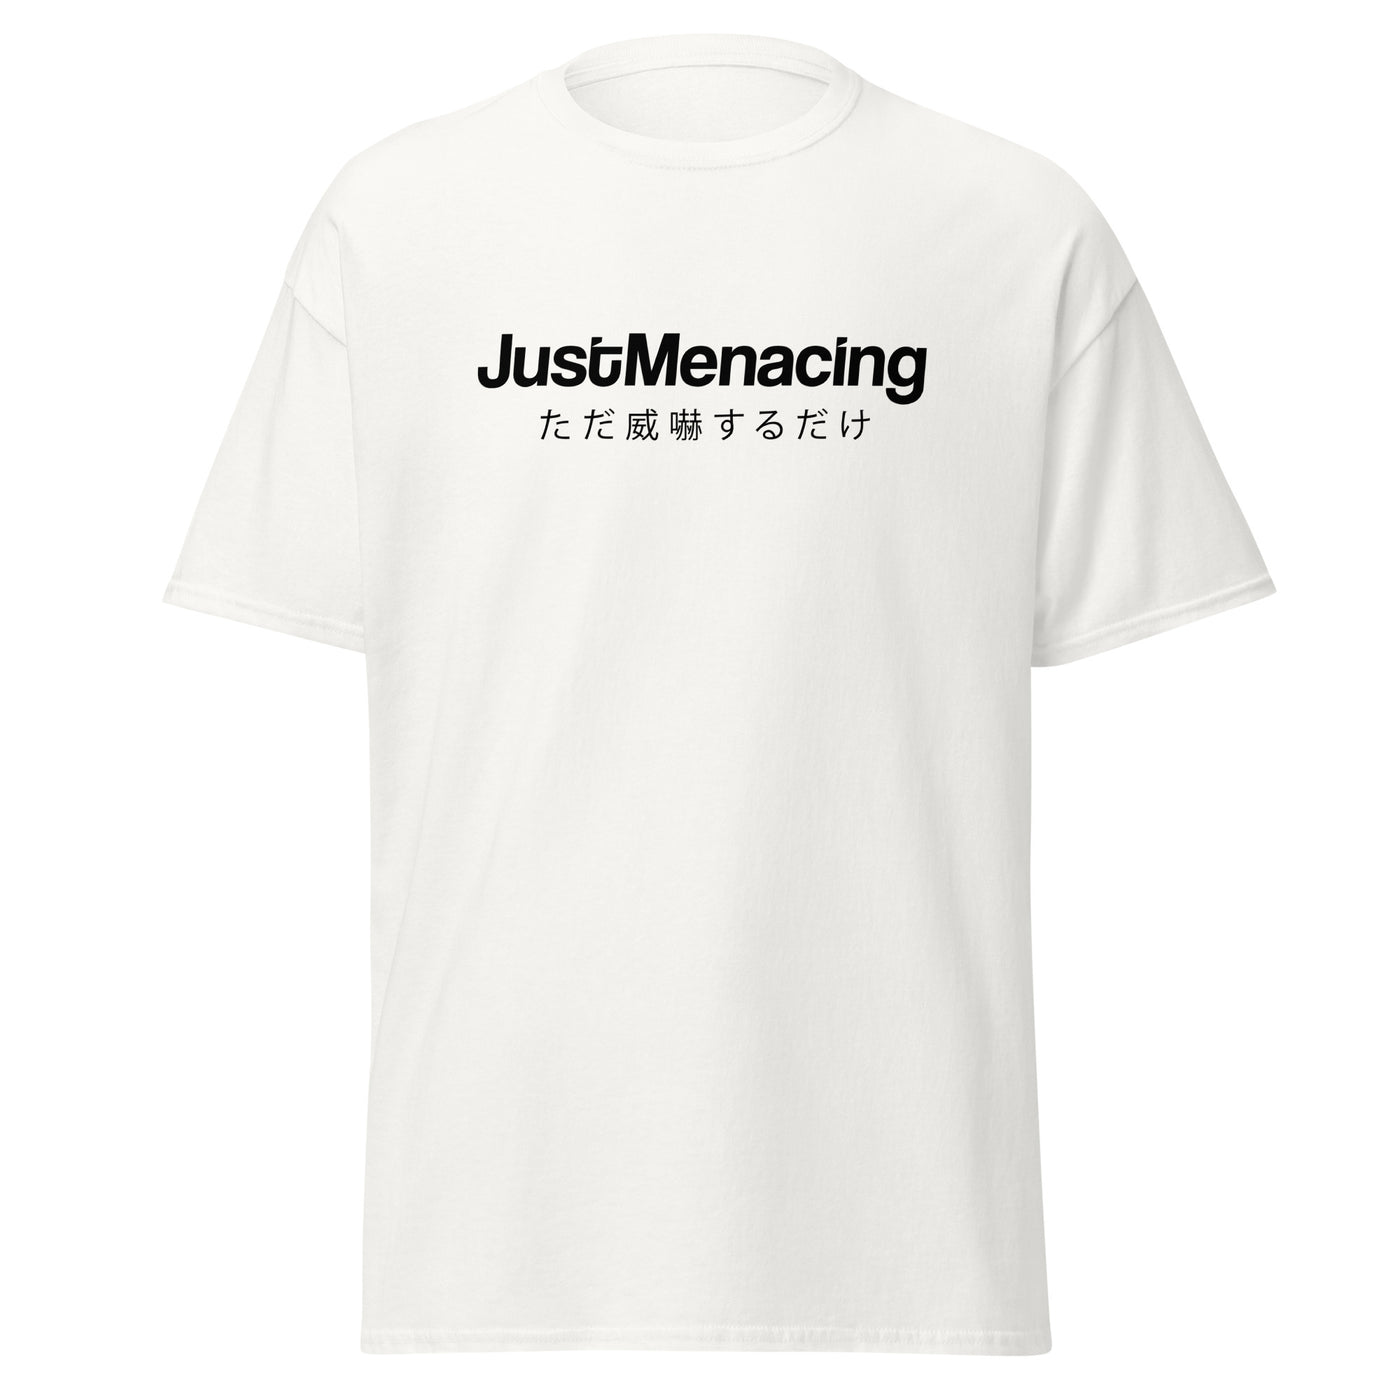 JustMenacing Japanese Tee (White)